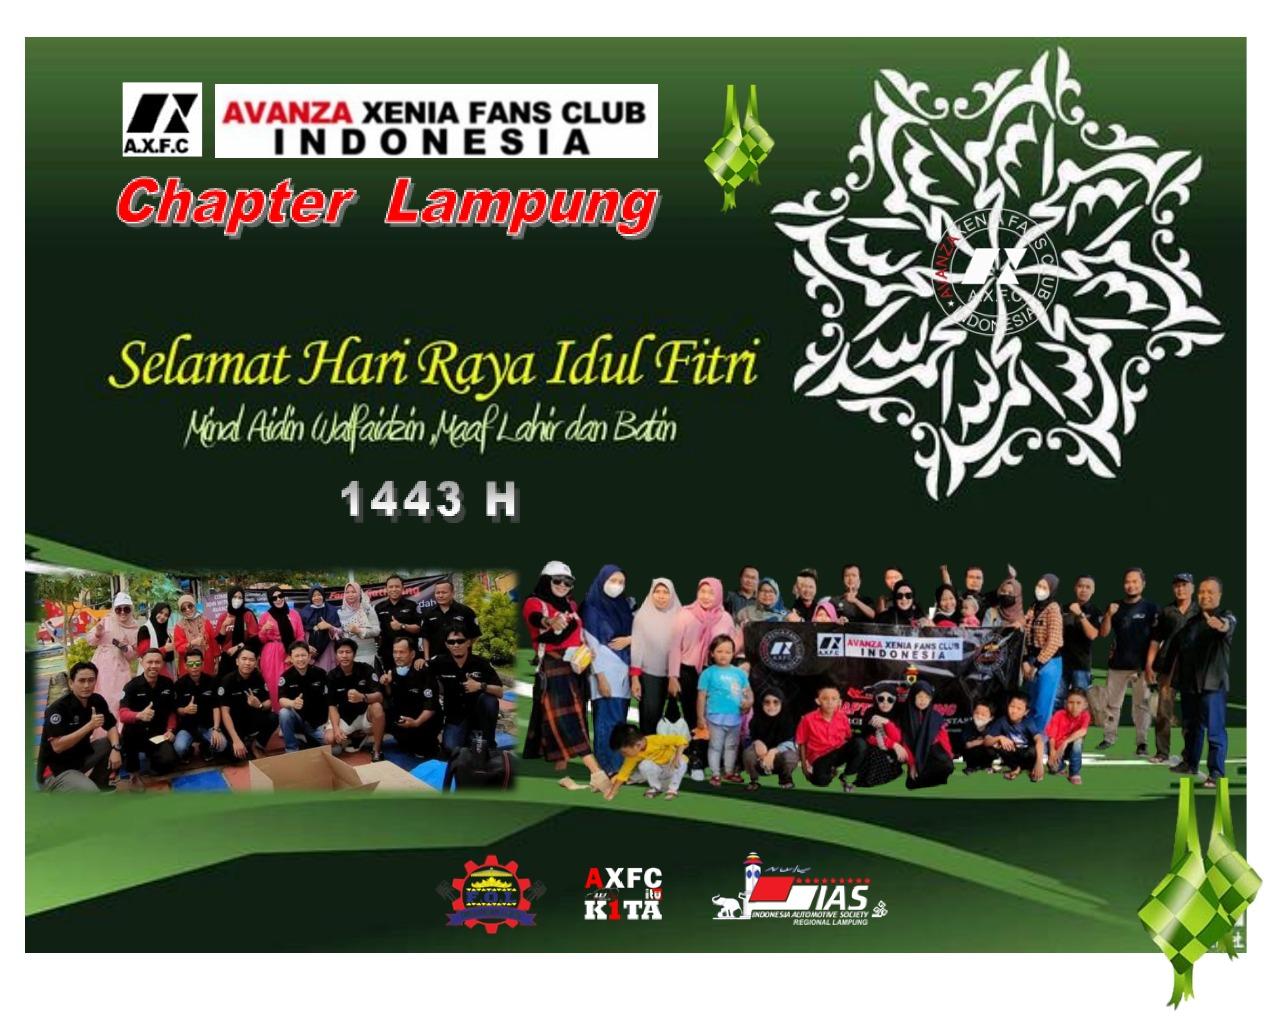 Keluarga Besar AXFC Chapter Lampung Mengucapkan, Selamat Hari Raya Idul Fitri 1 Syawal 1443 H